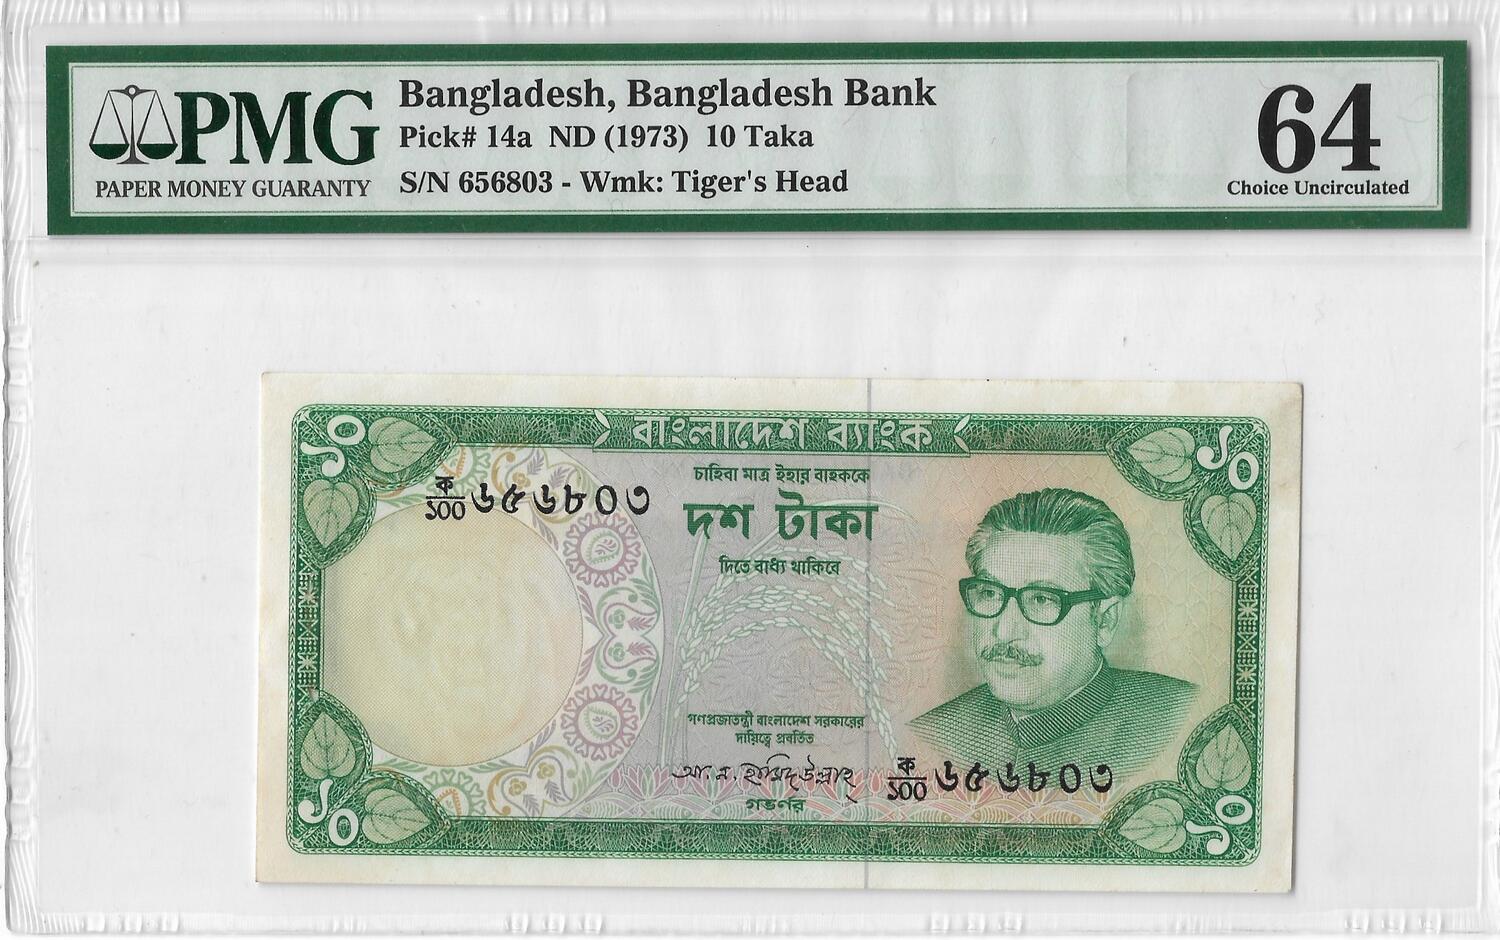 Bangladesh 40 Taka 2011 Pick 60 UNC Uncirculated Banknote 